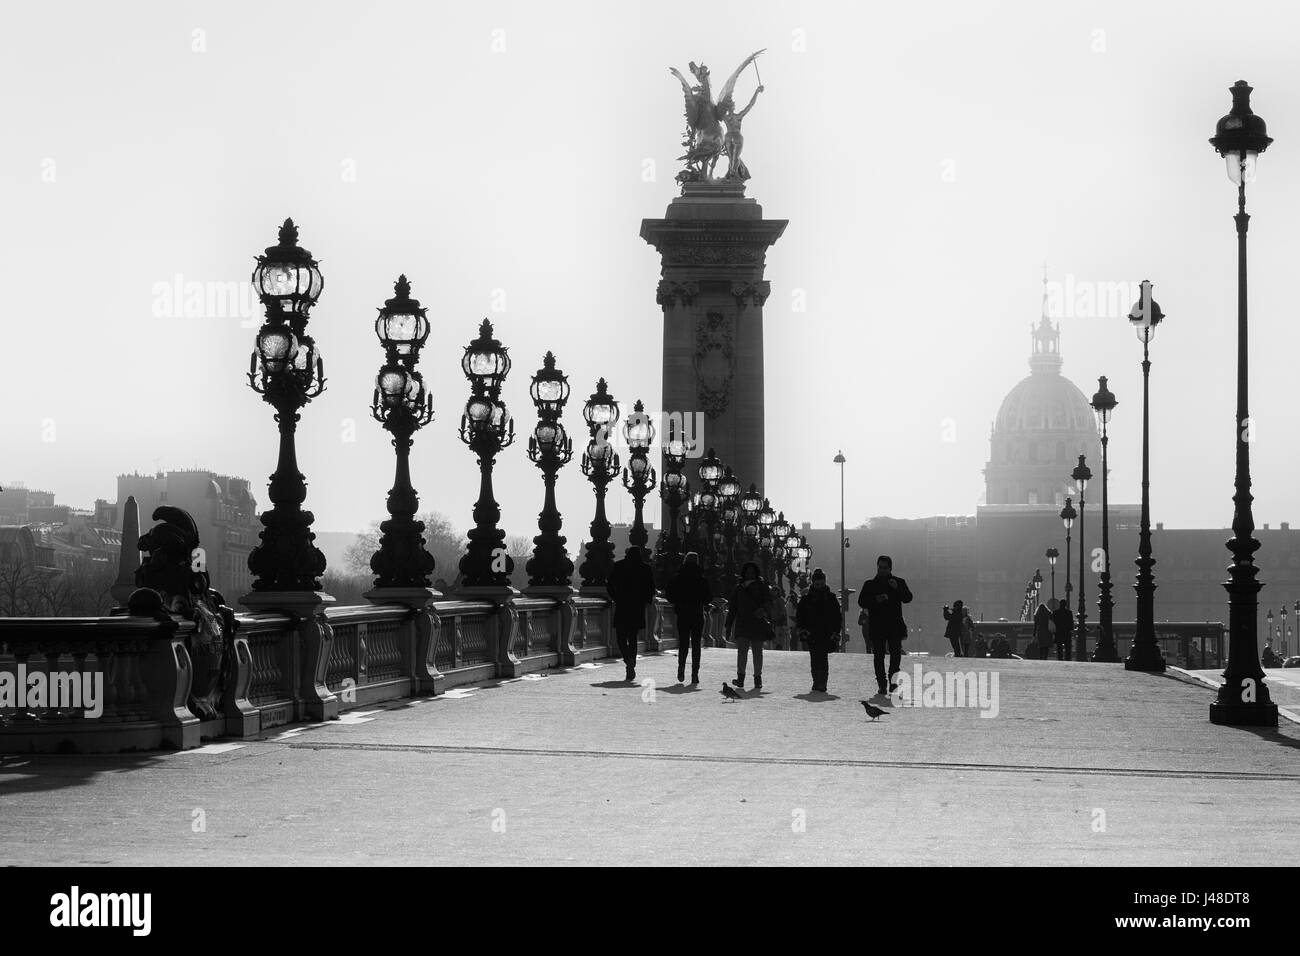 La gente camina sobre el histórico Puente Alexandre III ( Puente Alexandre III ) en París. Imagen en blanco y negro. Foto de stock